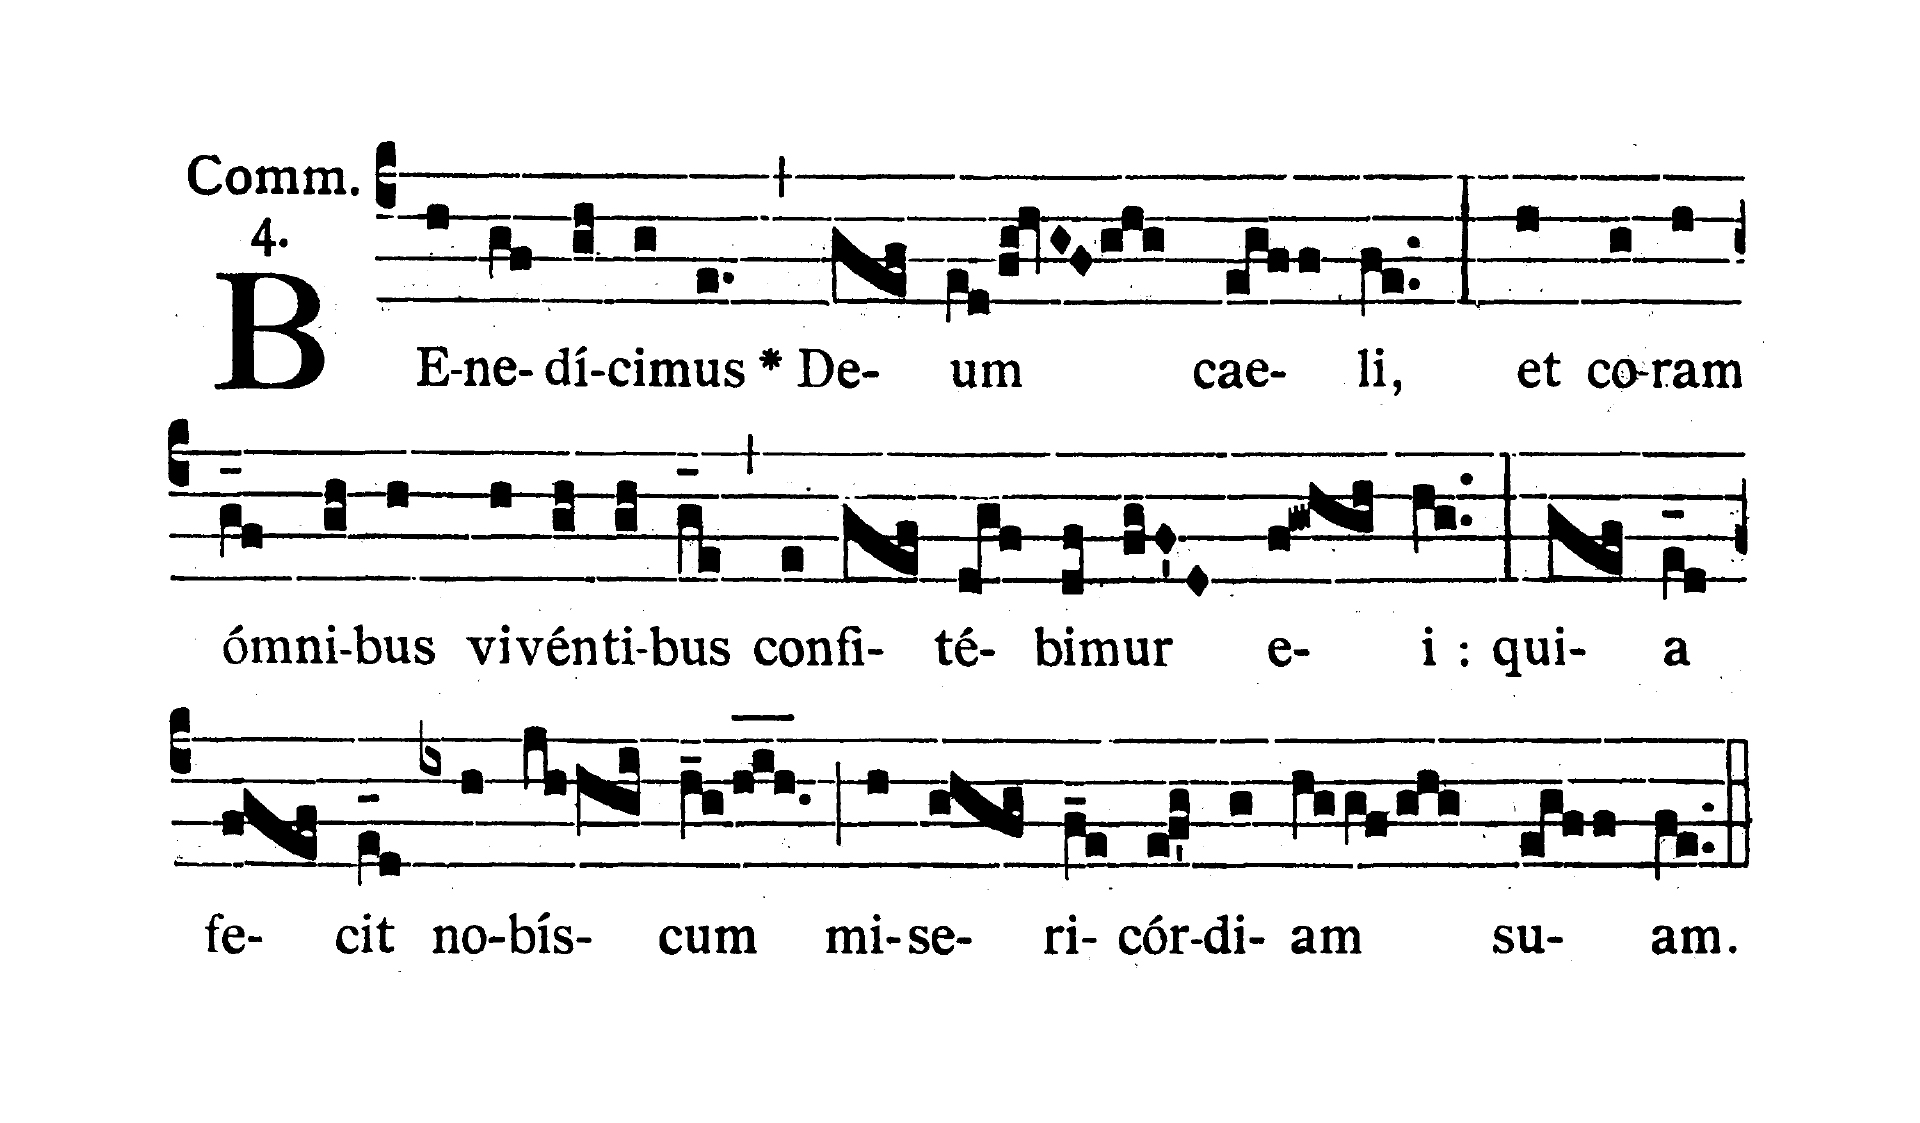 In festo Sanctissimi Trinitatis - Communio (Benedicimus Deum)